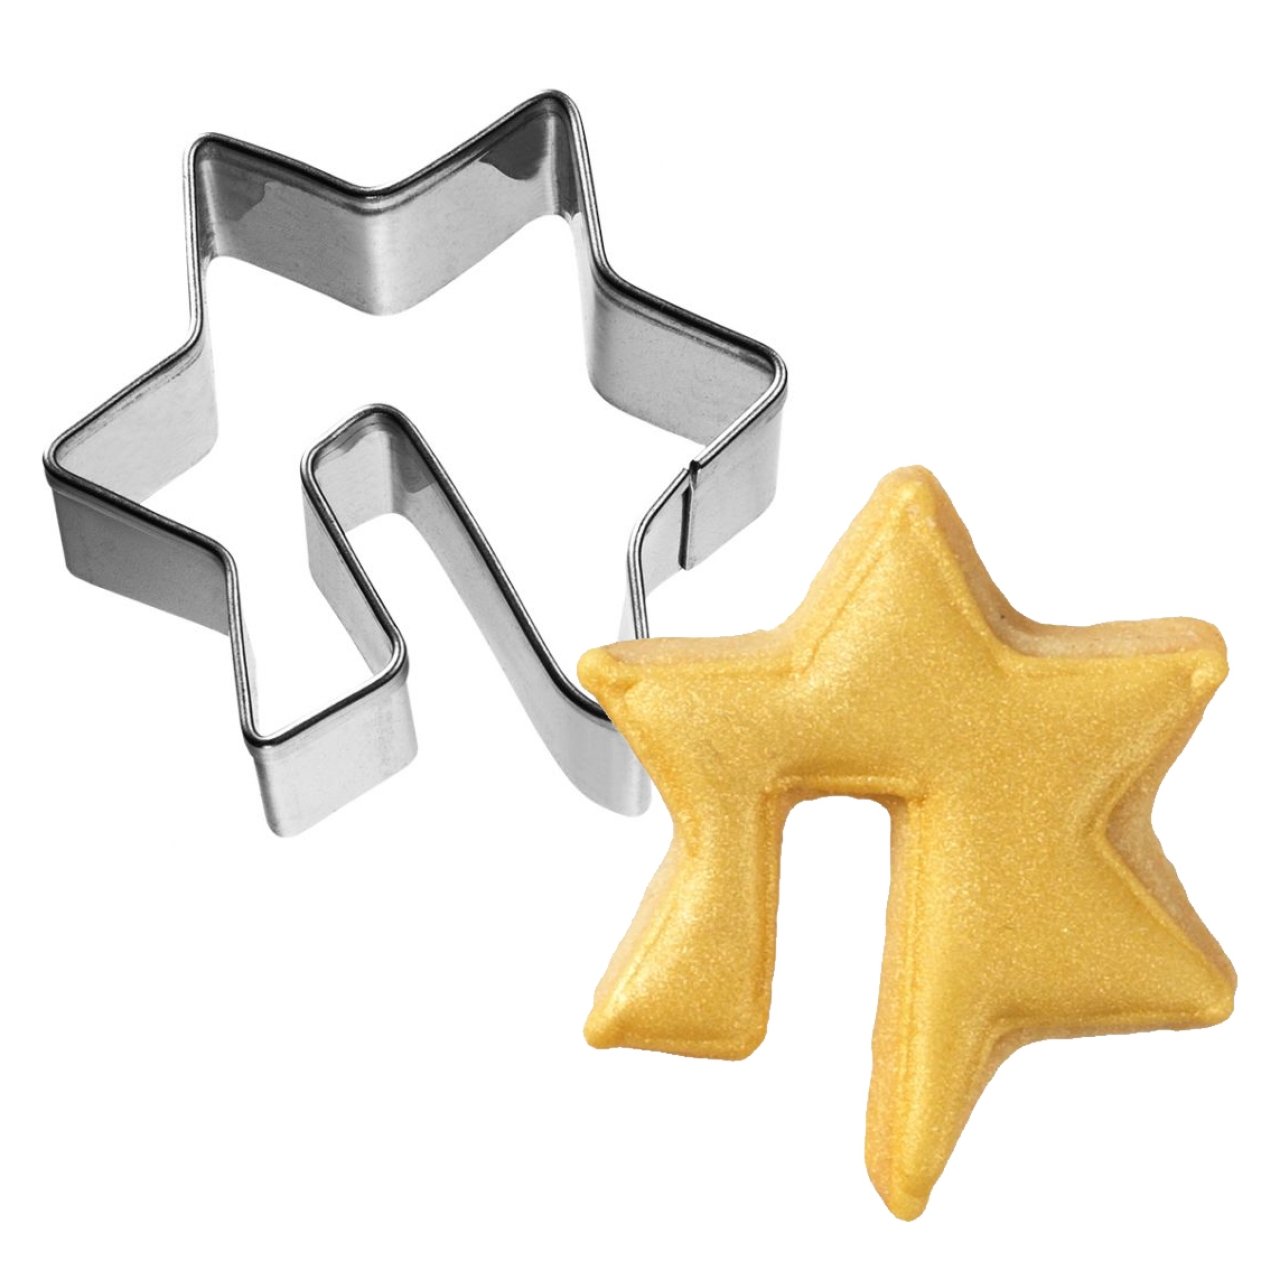 Plätzchen Ausstecher "Stern für Tassenkekse" 4,5 cm